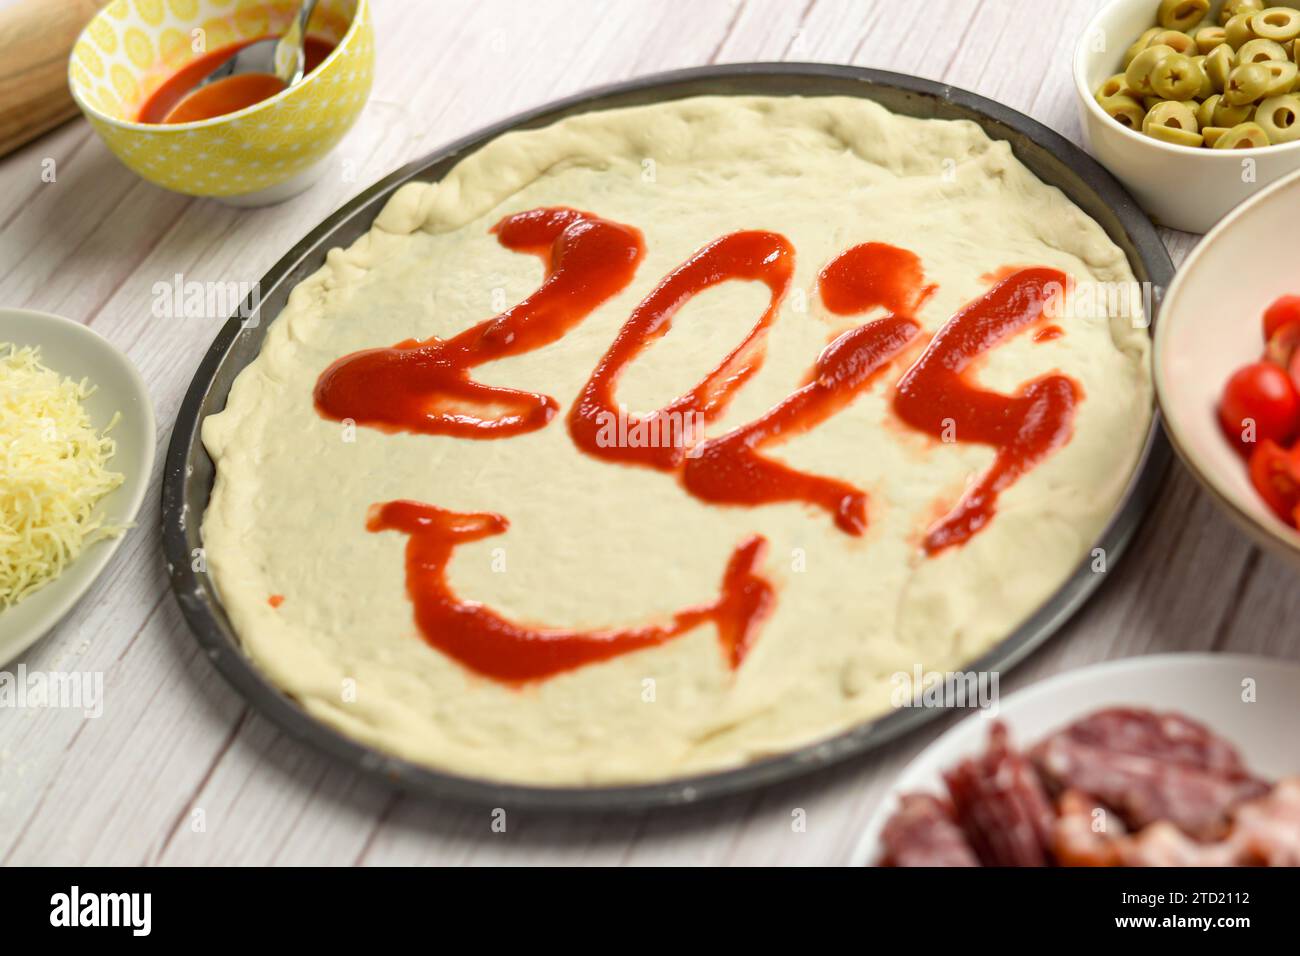 2024 contrassegnato con salsa di pomodoro su una pizza appena sfornata, accogliendo il nuovo anno con una delizia salata Foto Stock